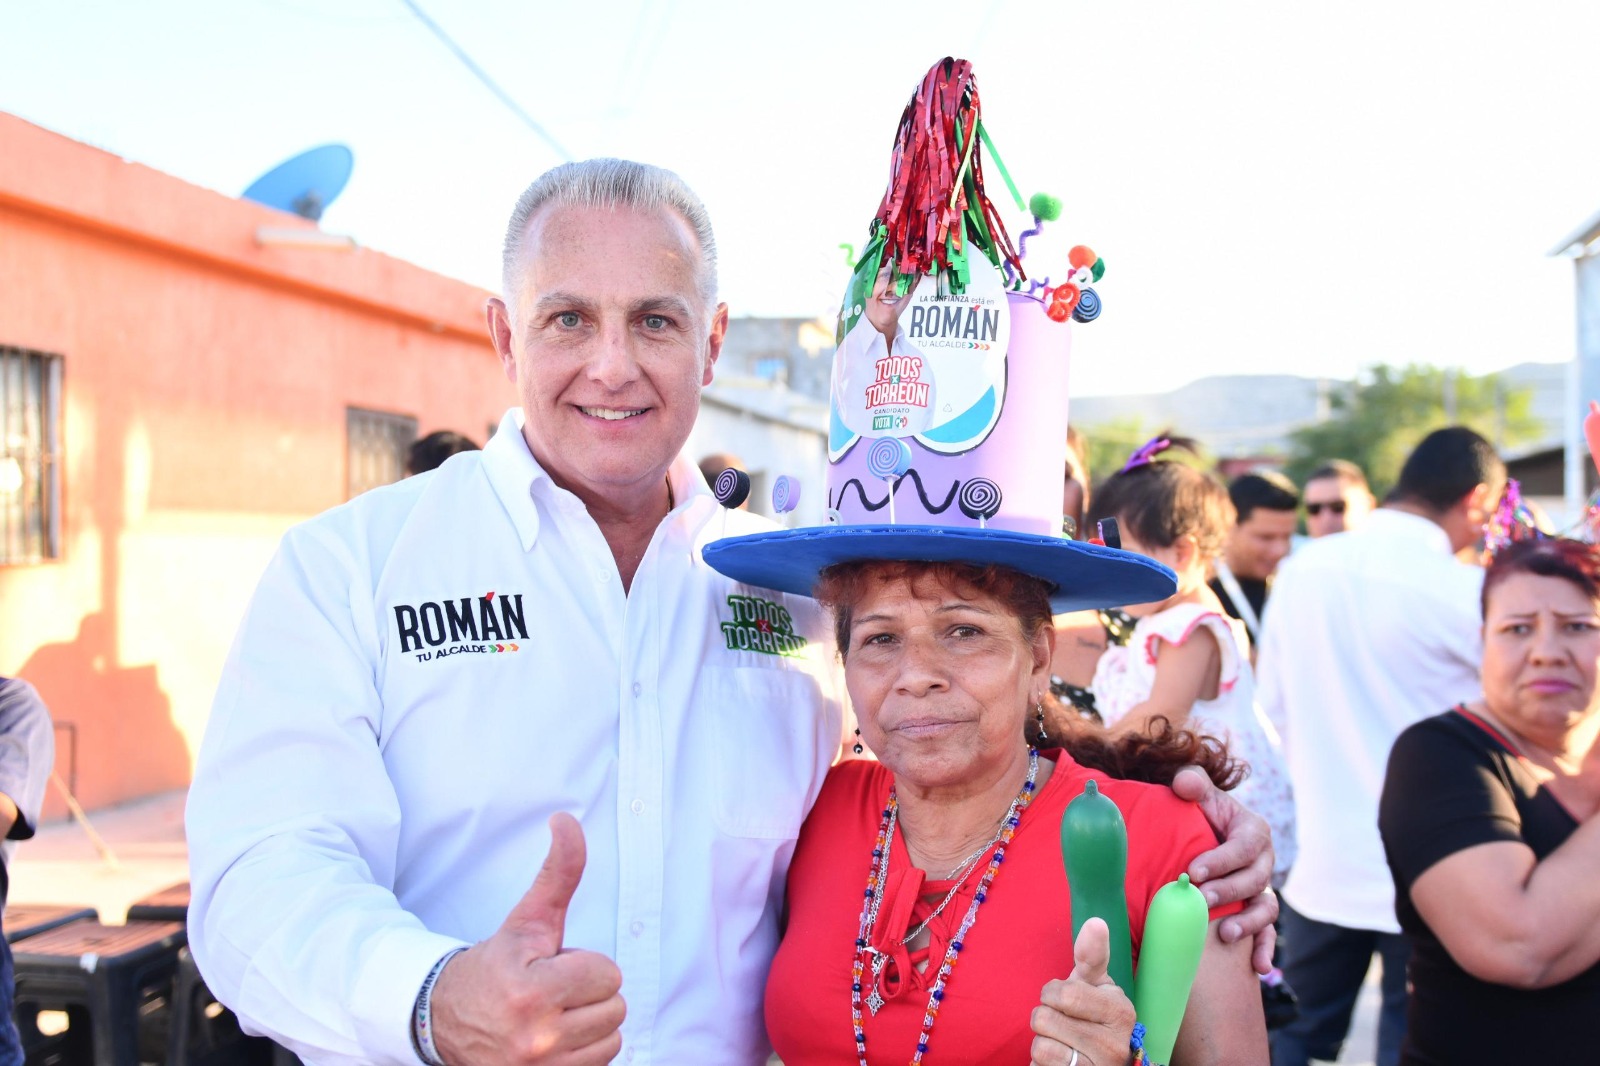 “Vamos por más y mejores servicios, por inversión, por ese Torreón que todos hemos soñado” Roman Cepeda